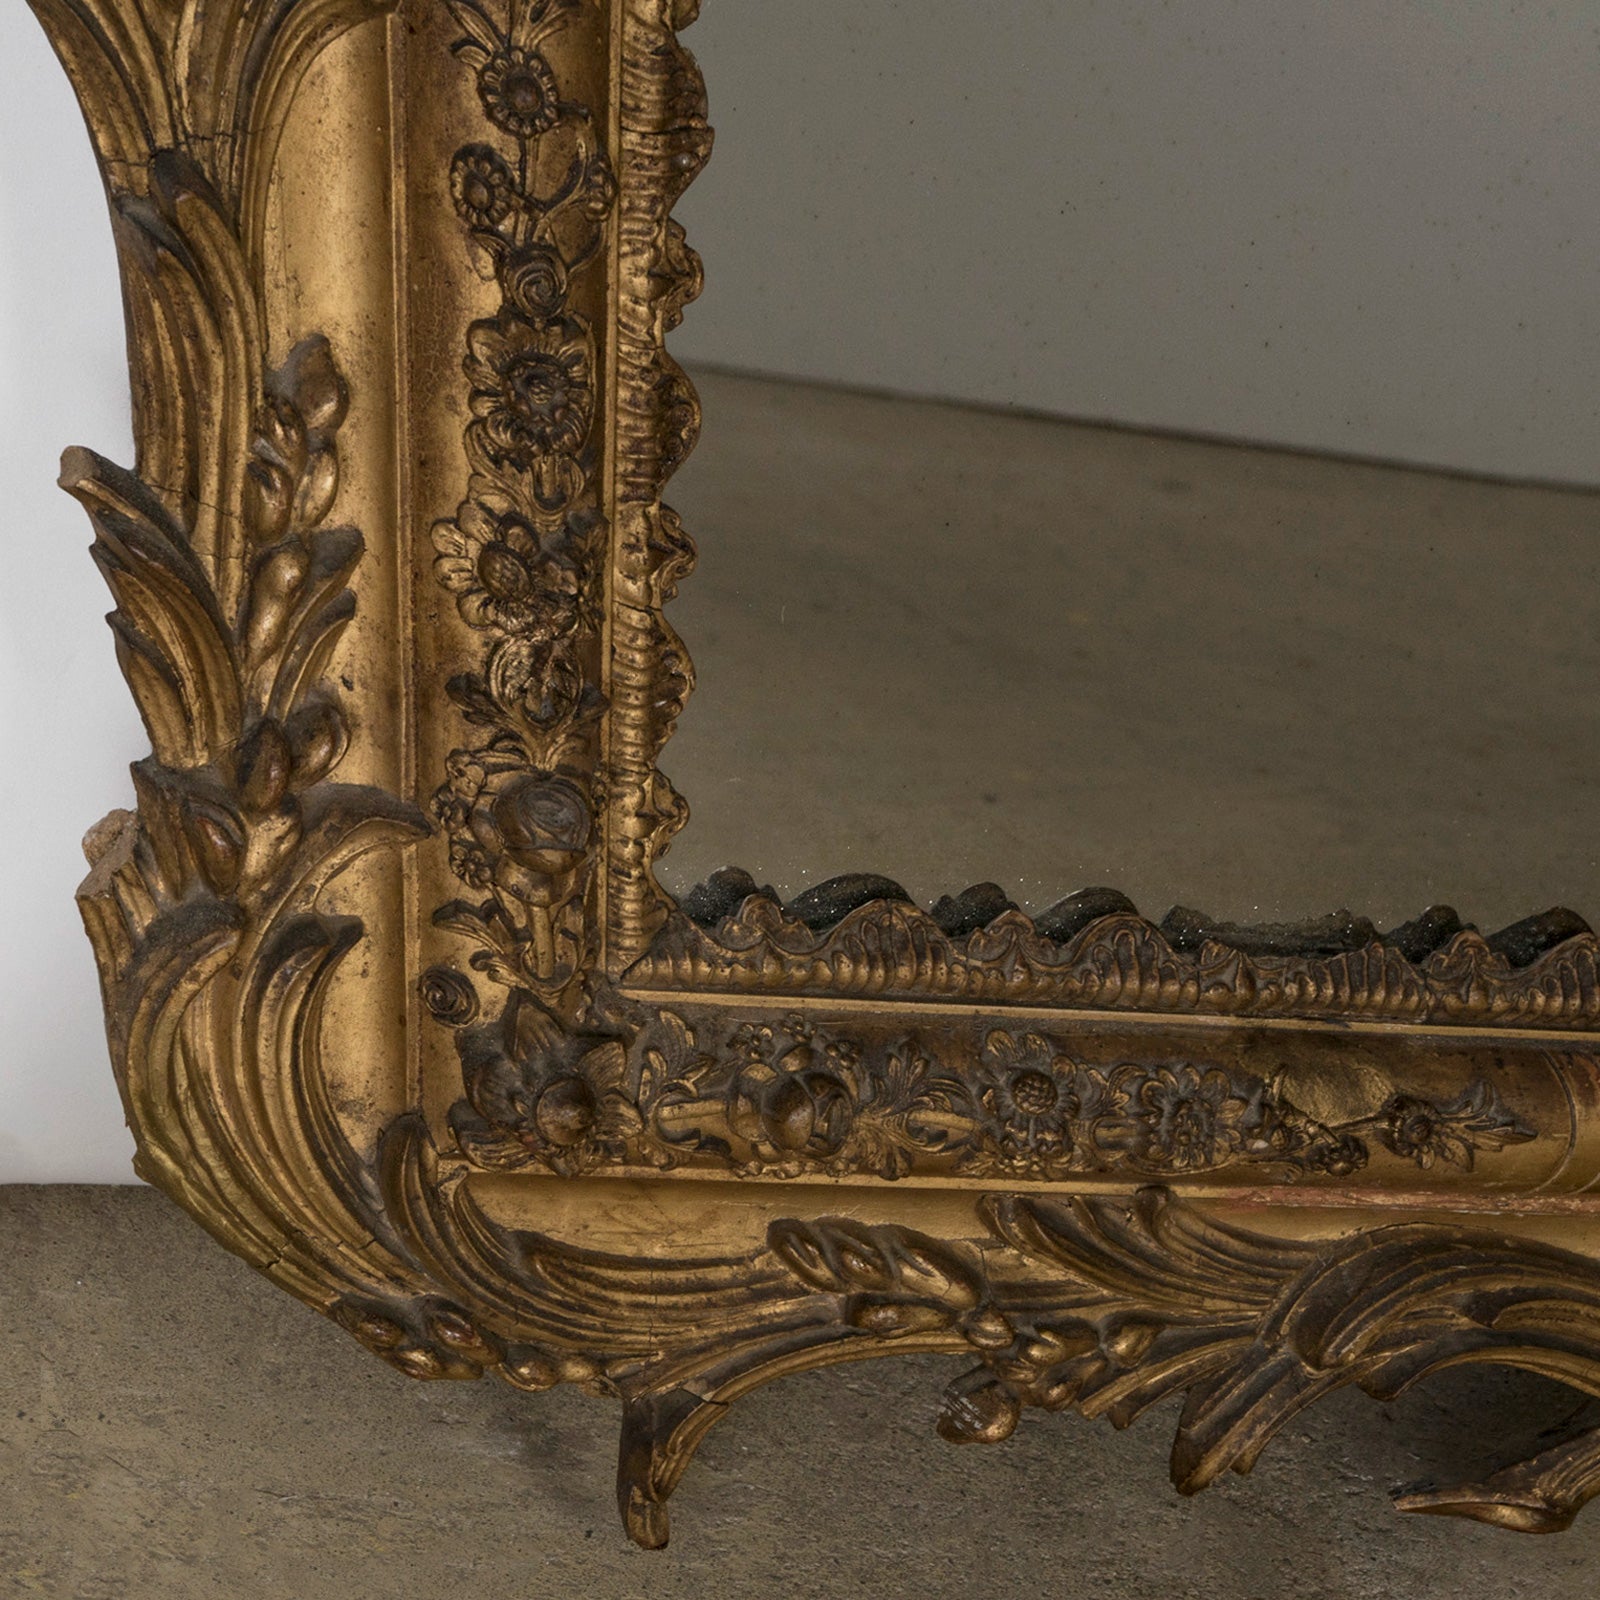 Ornate Louis XV Style Provencal Mirror